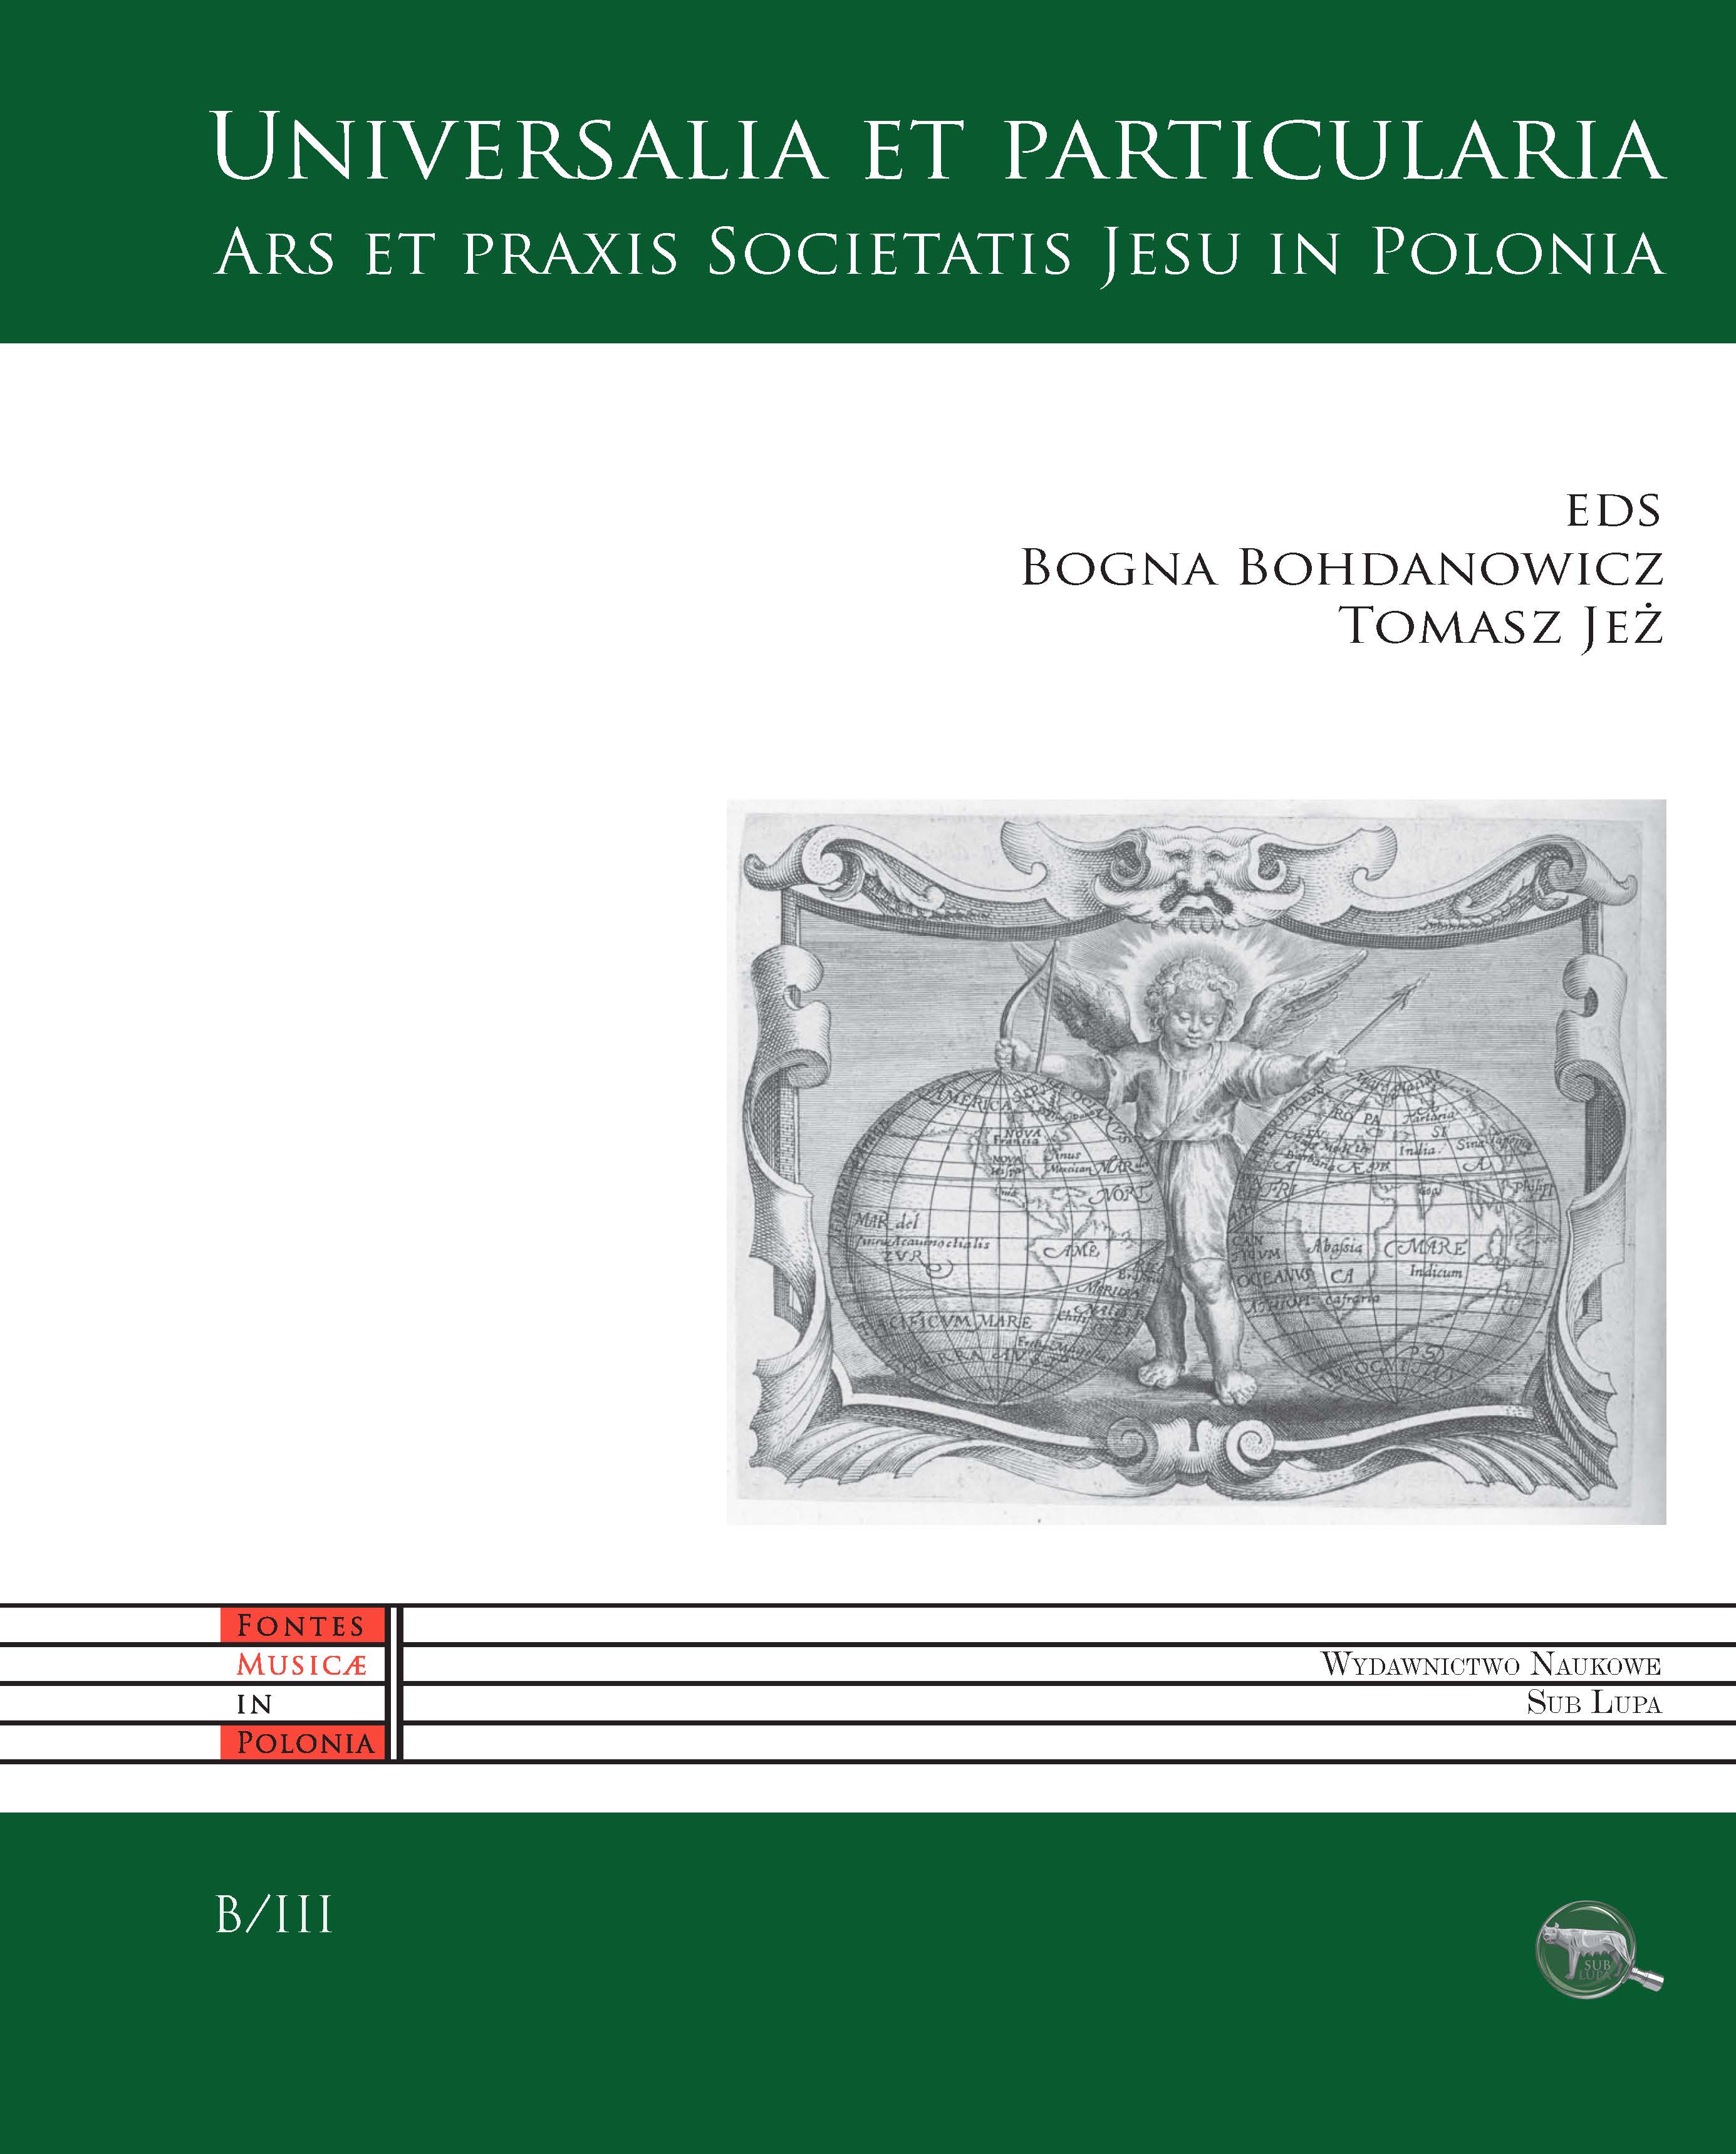 Universalia et prticularia. Ars et praxis Societatis Jesu in Polonia, eds Bogna Bohdanowicz, Tomasz Jeż, Warszawa: Wydawnictwo Naukowe Sub Lupa 2018